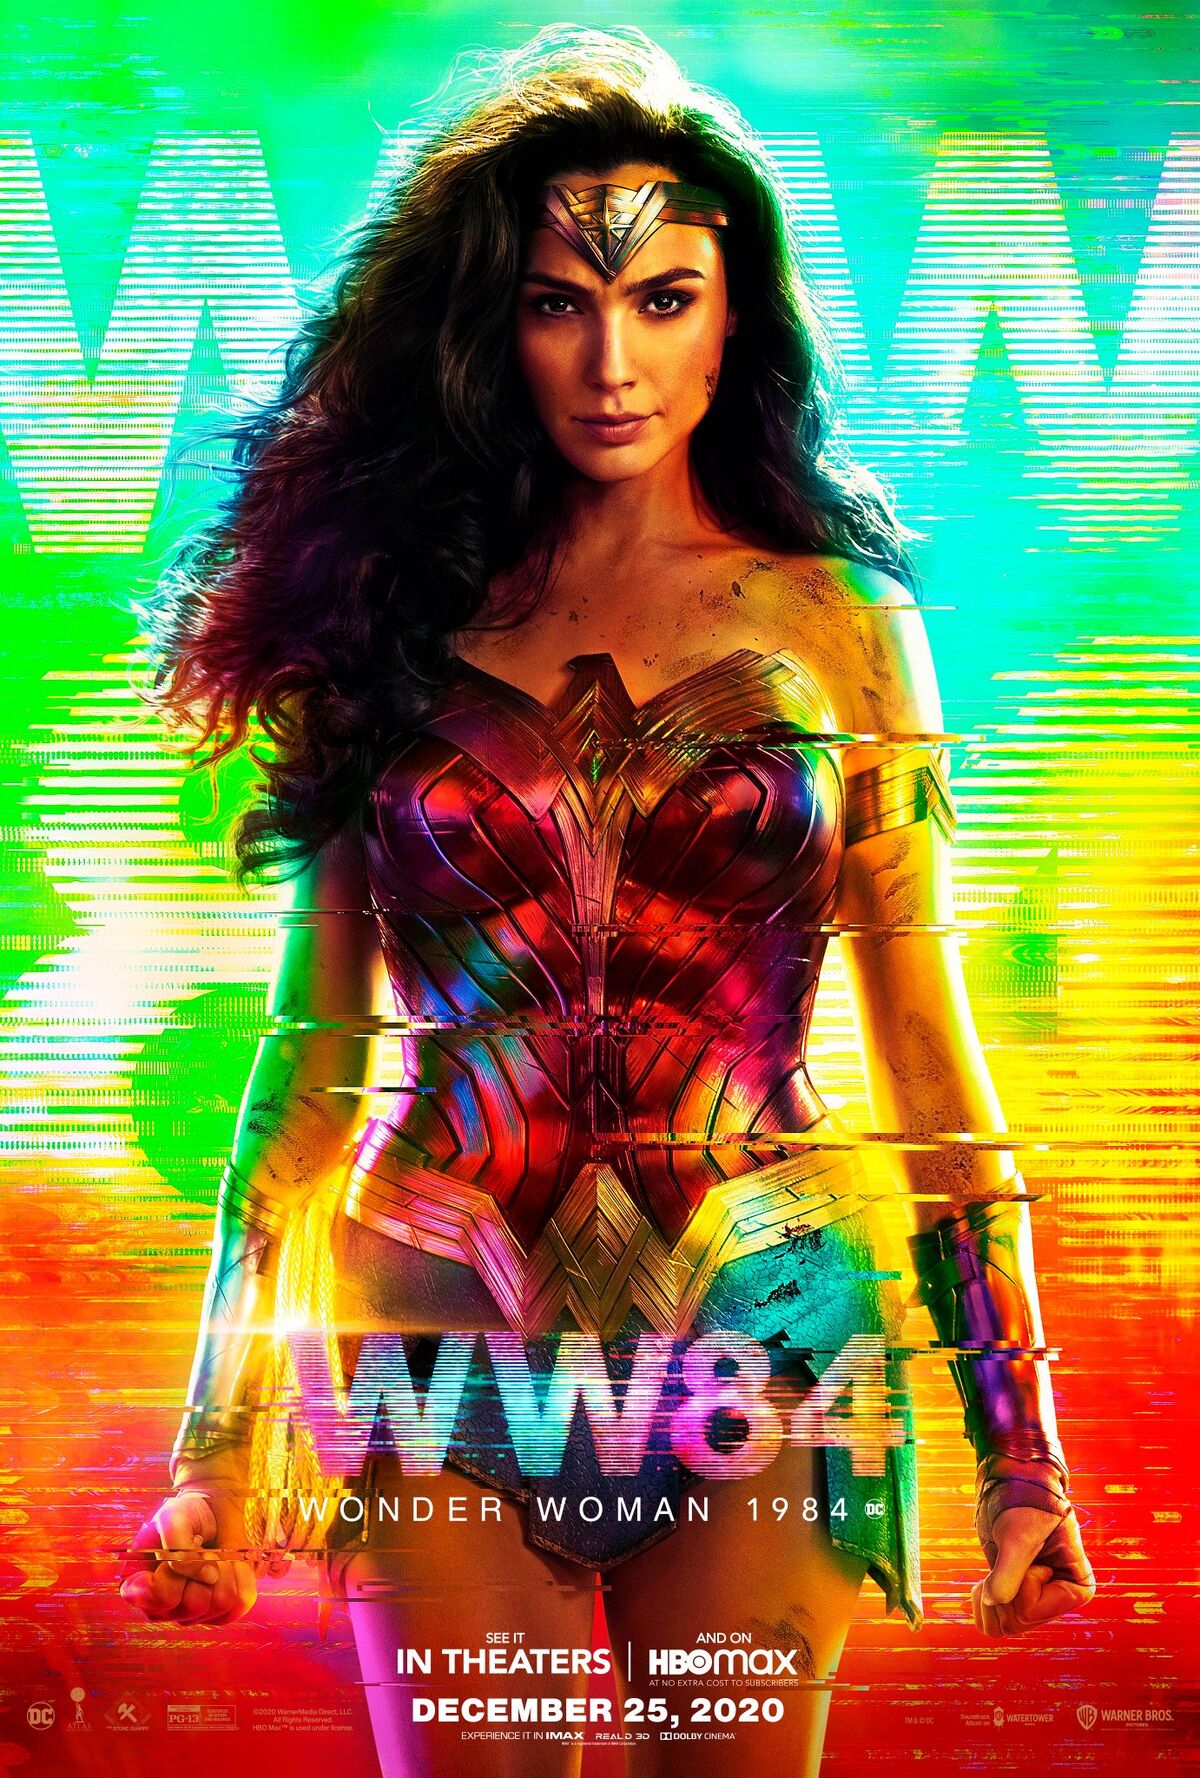 Wonder Woman 1984 (soundtrack) - Wikipedia